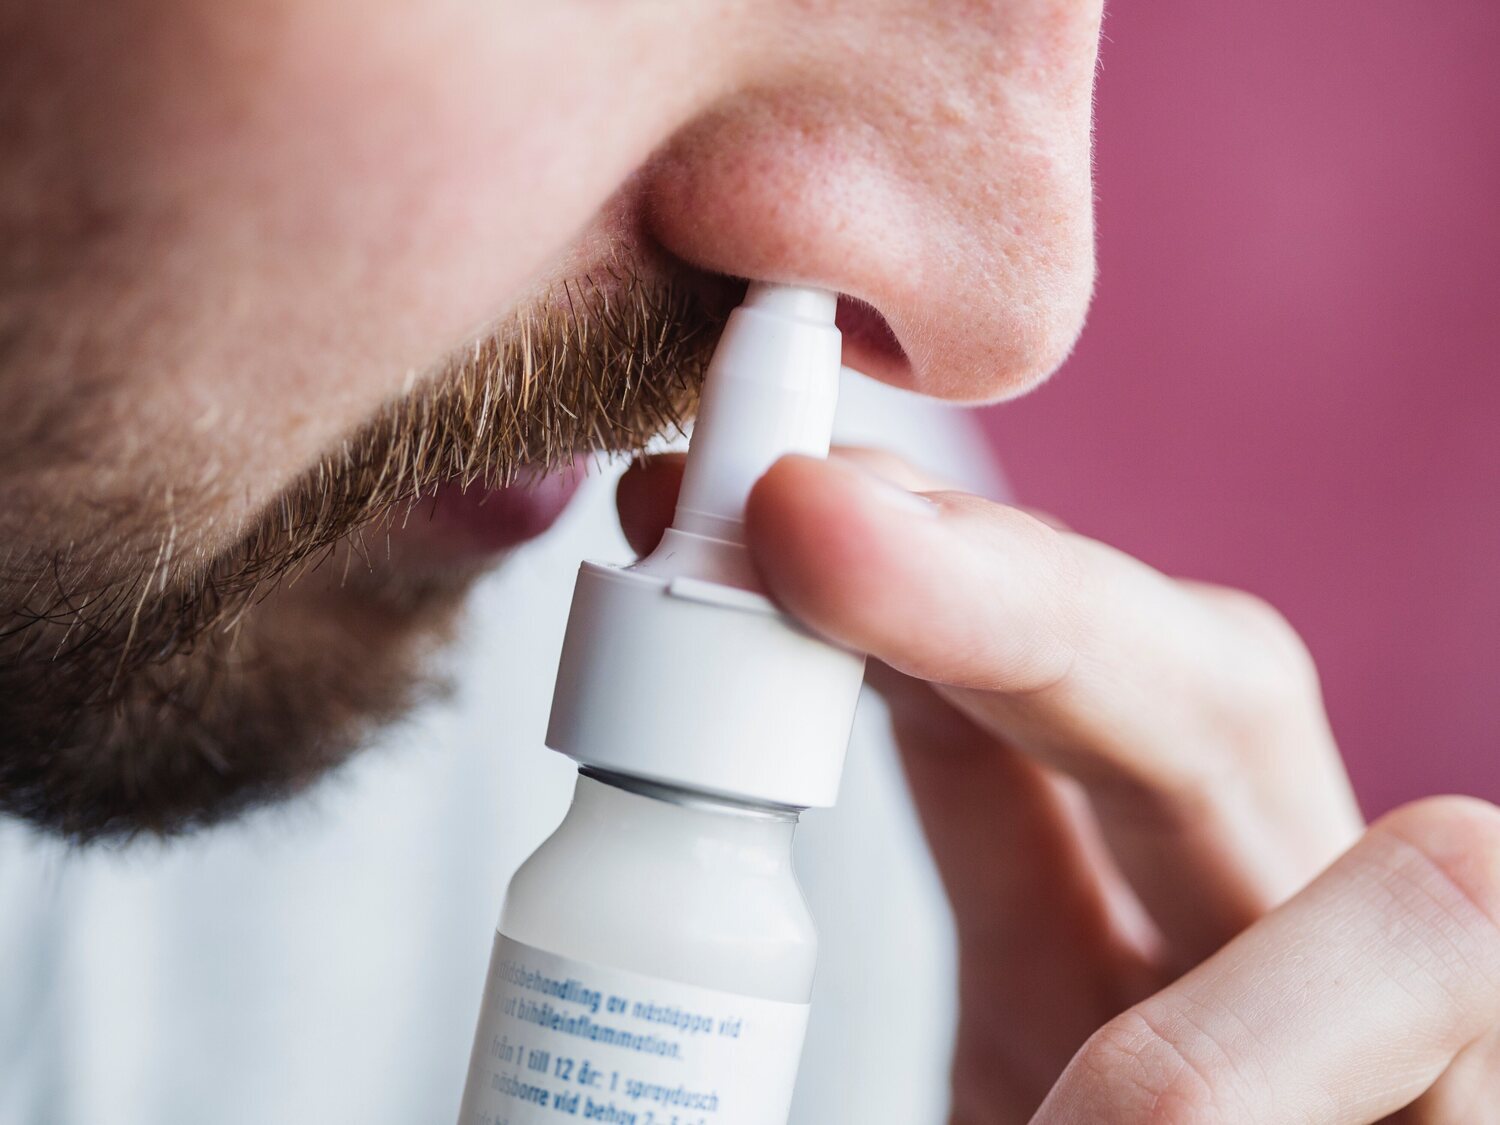 El medicamento contra la tos, congestión y alergias que provoca adicción: por qué debes restringir su uso